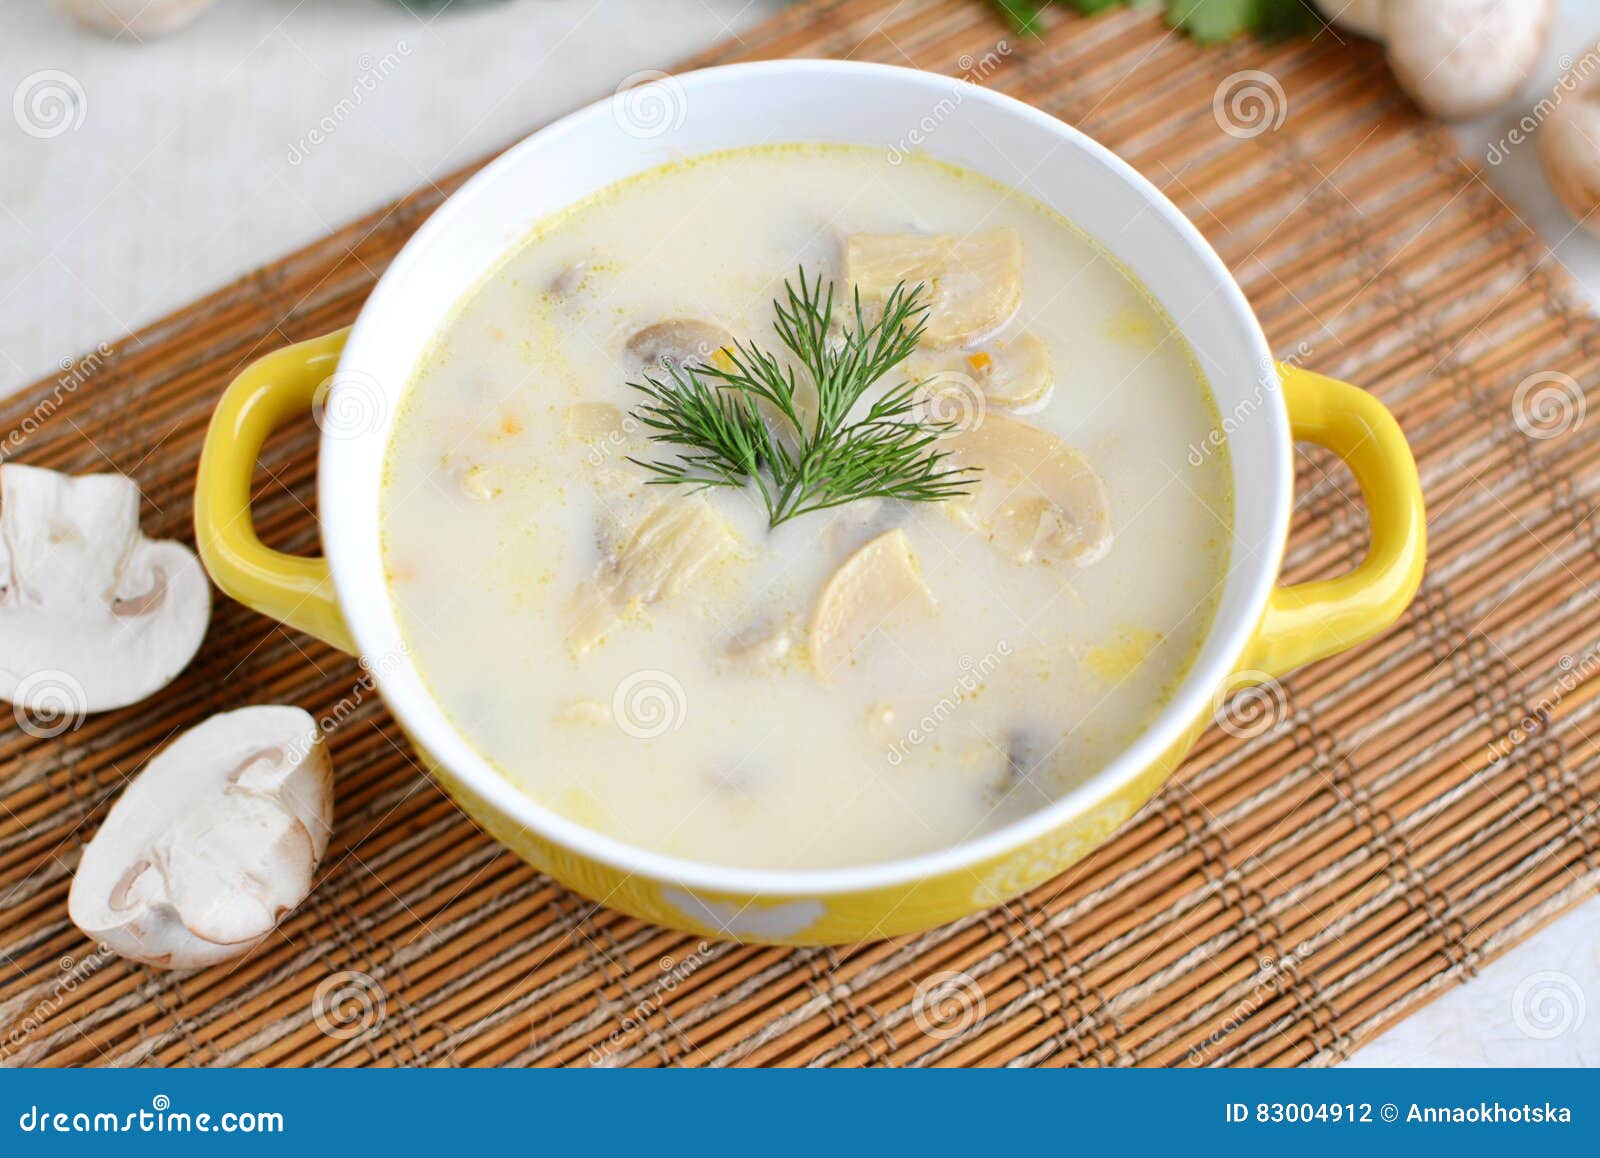 Суп с плавленным сыром и грибами